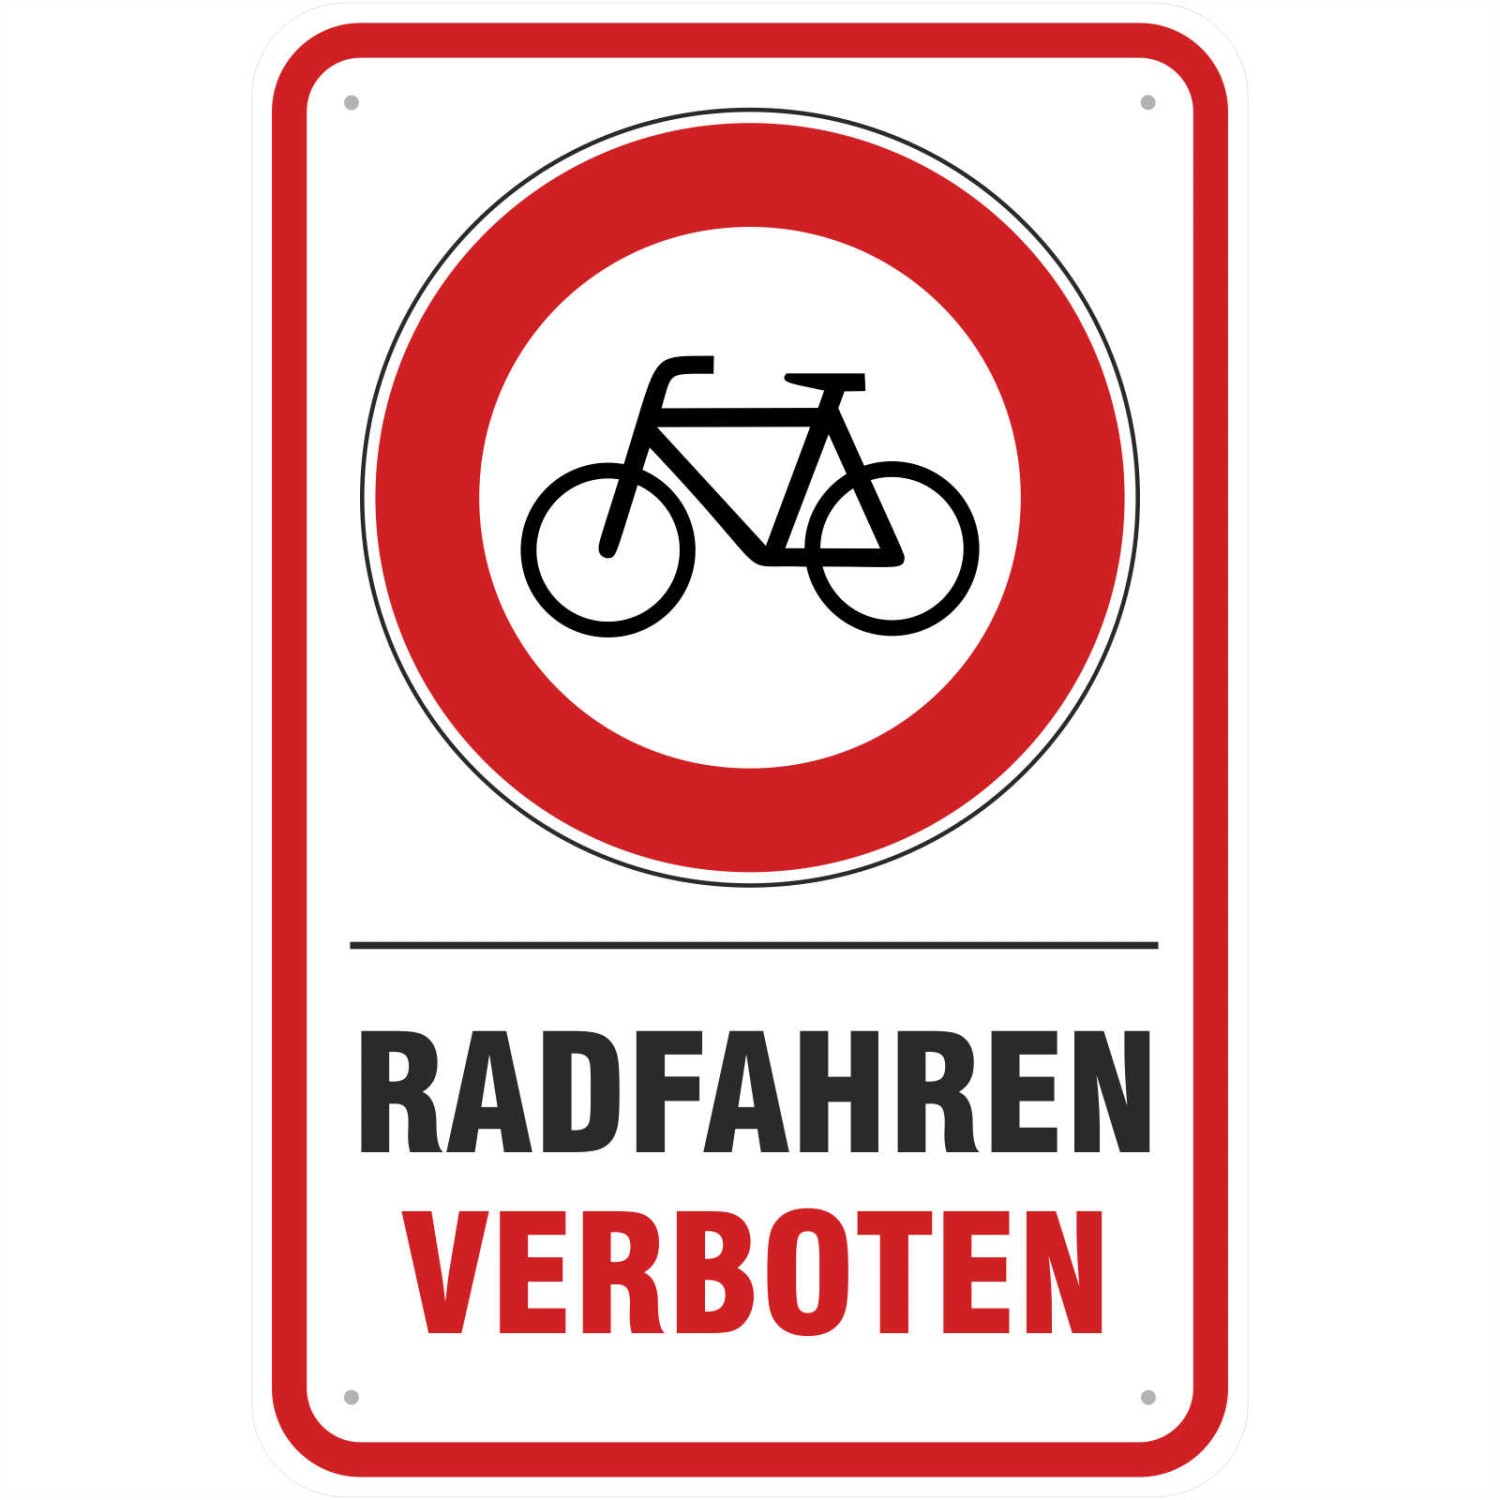 Aufkleber Radfahren Radfahrer verboten mit Symbol (Material und Größe: Aufkleber 20x30cm)